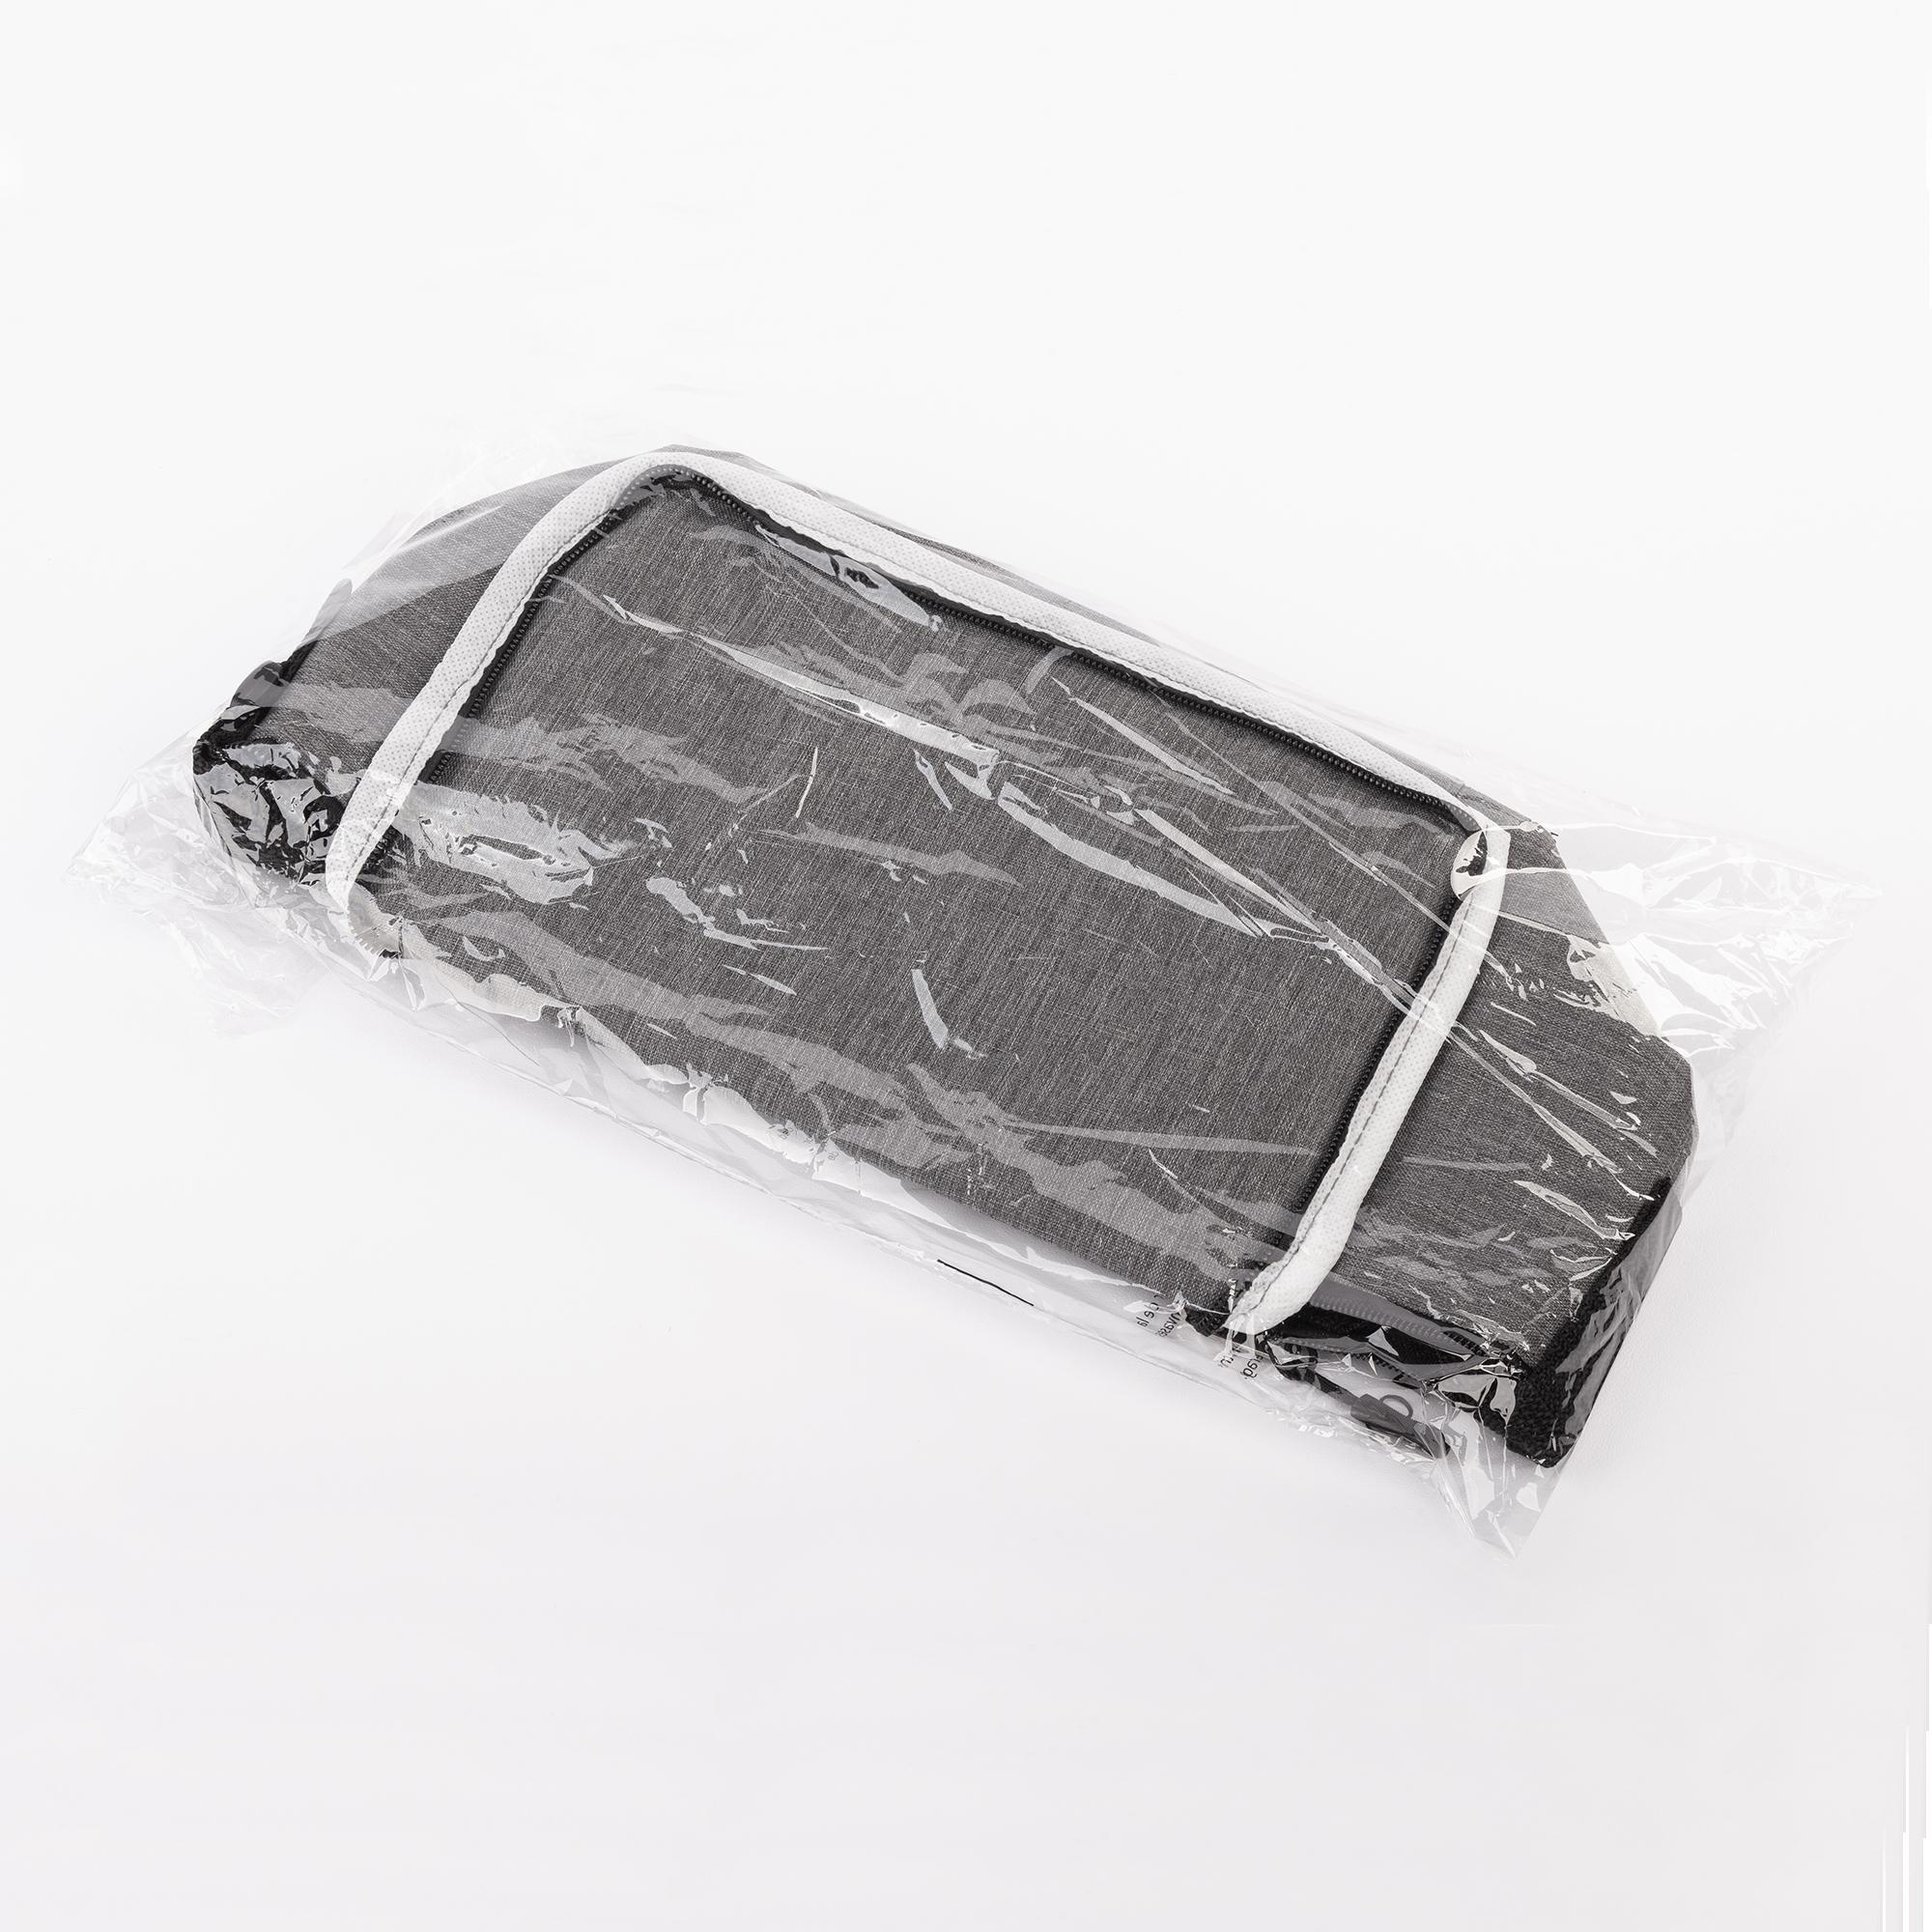 Сумка-холодильник "Cooler", цвет серый, фото 2